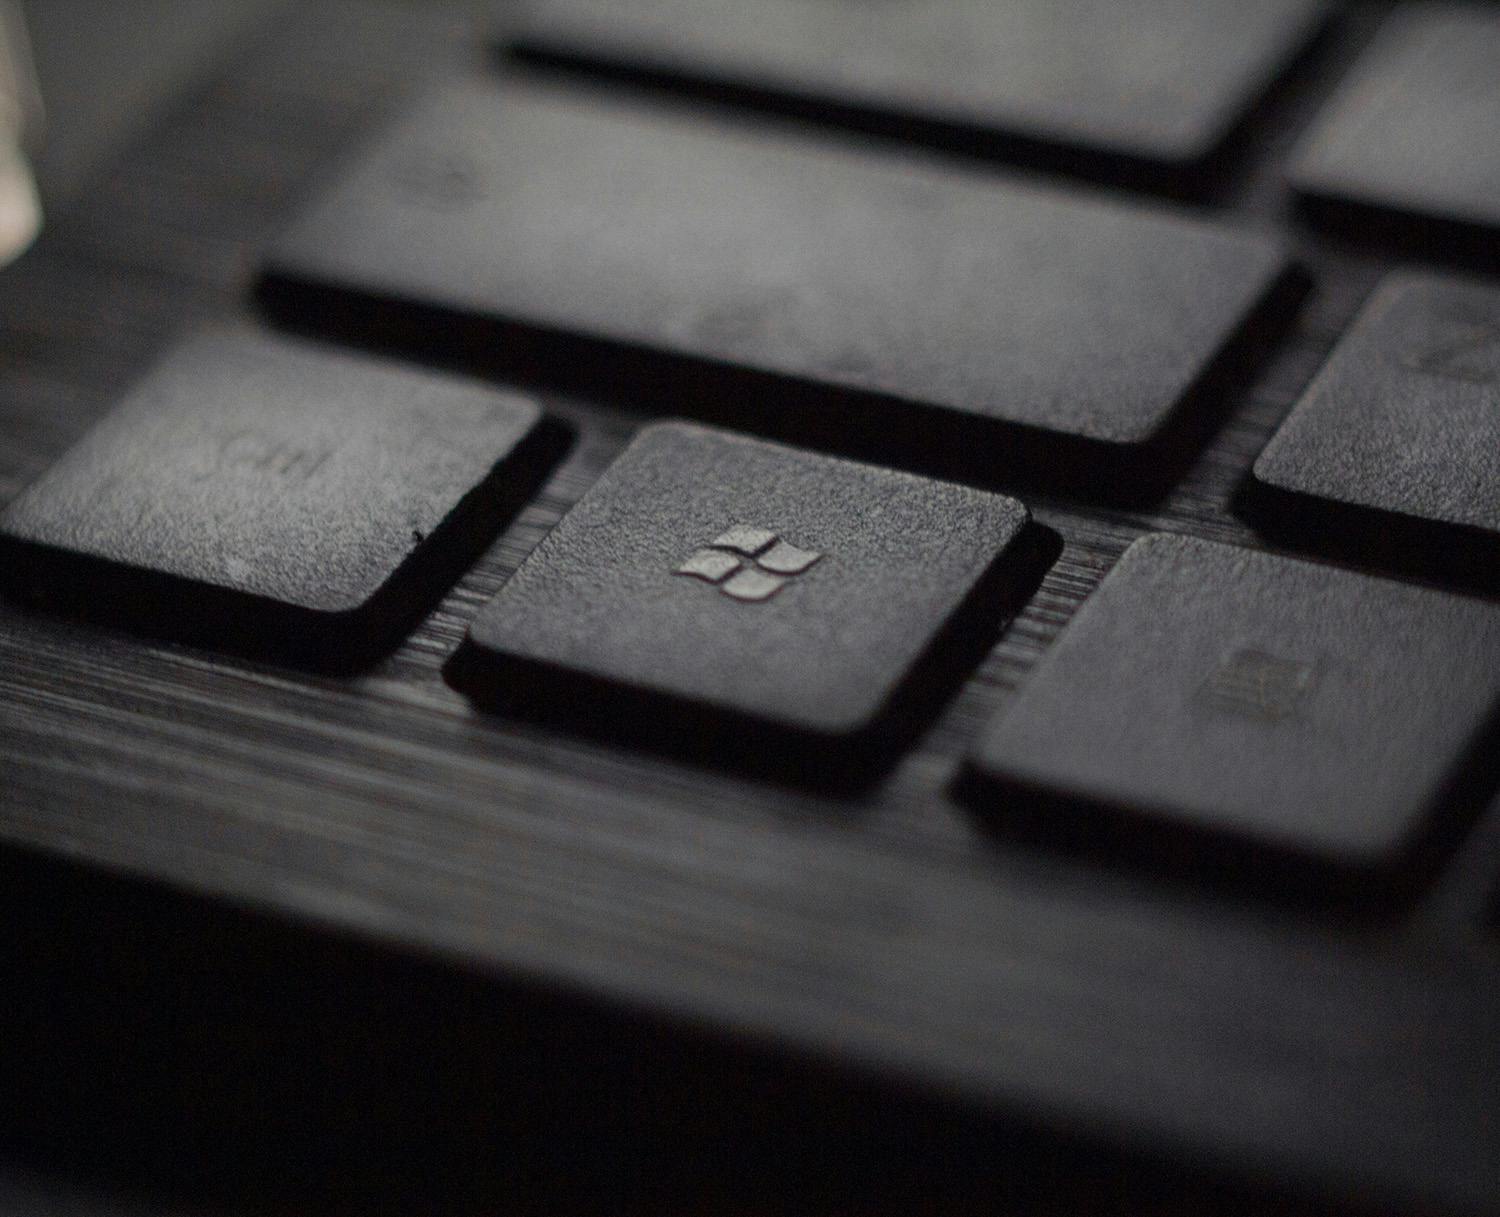 Microsoft tangentbord med Windows-knapp